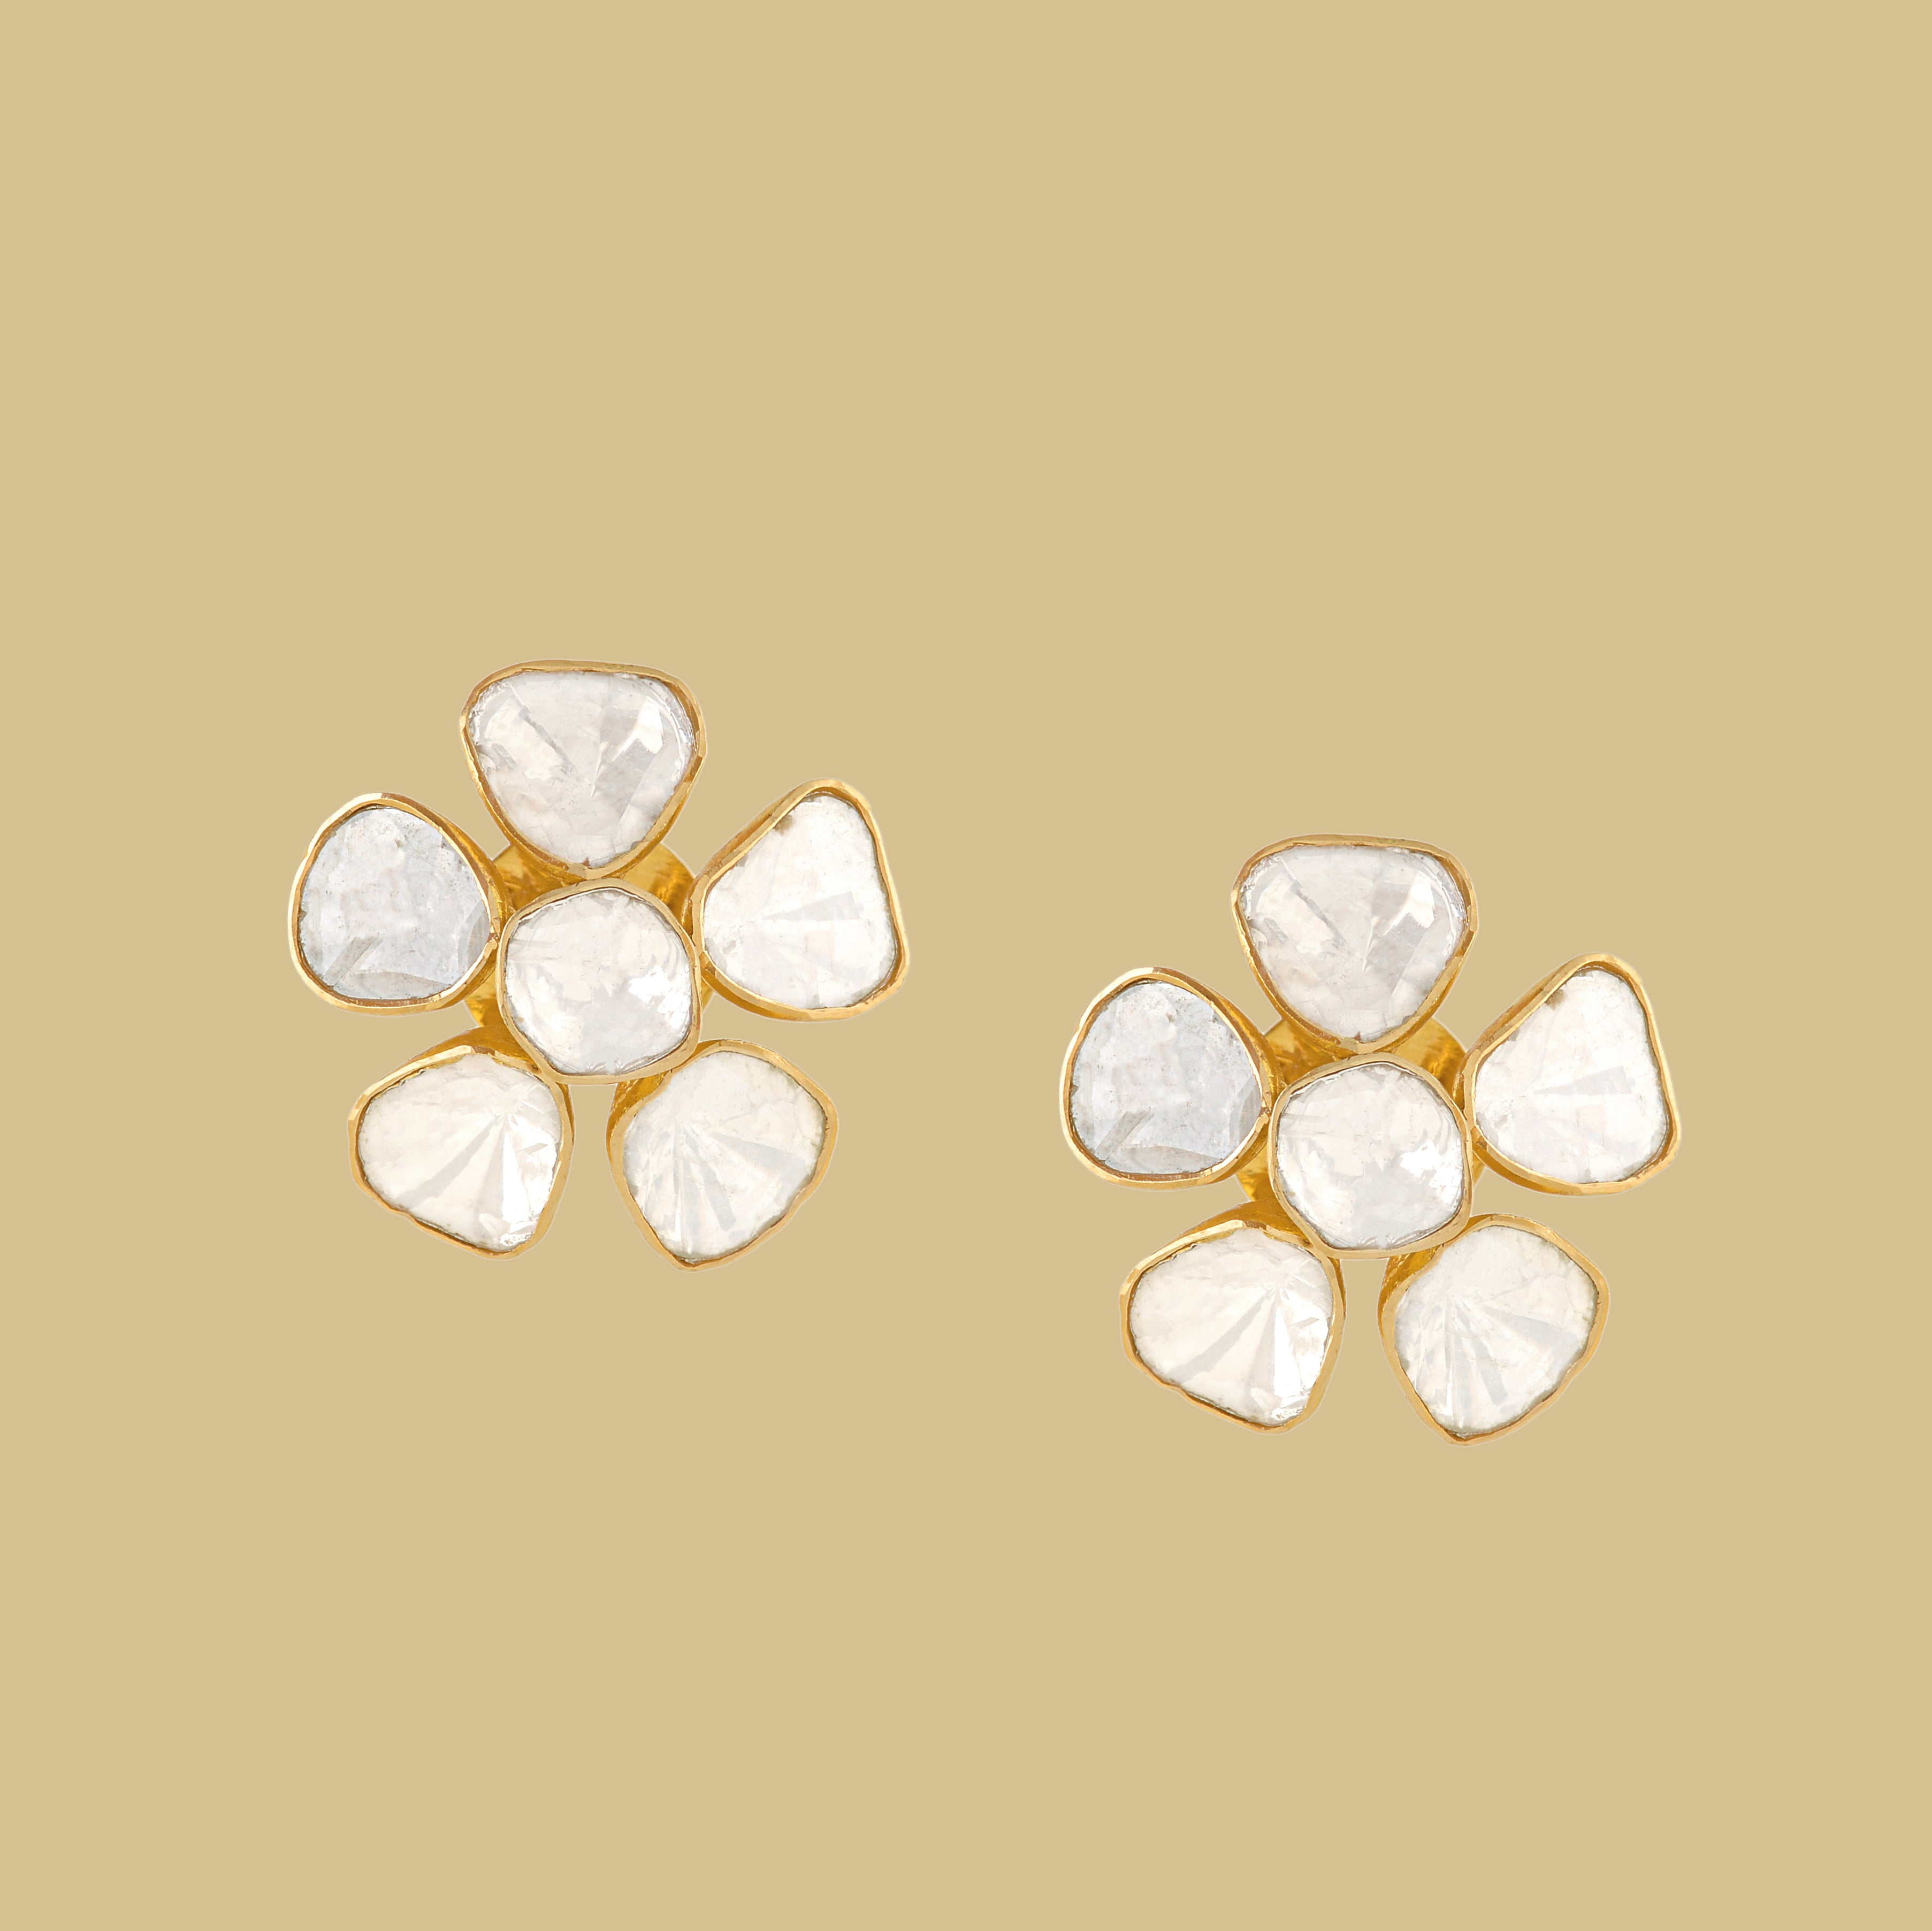 Polki Diamond Stud Earrings in Floral Motif